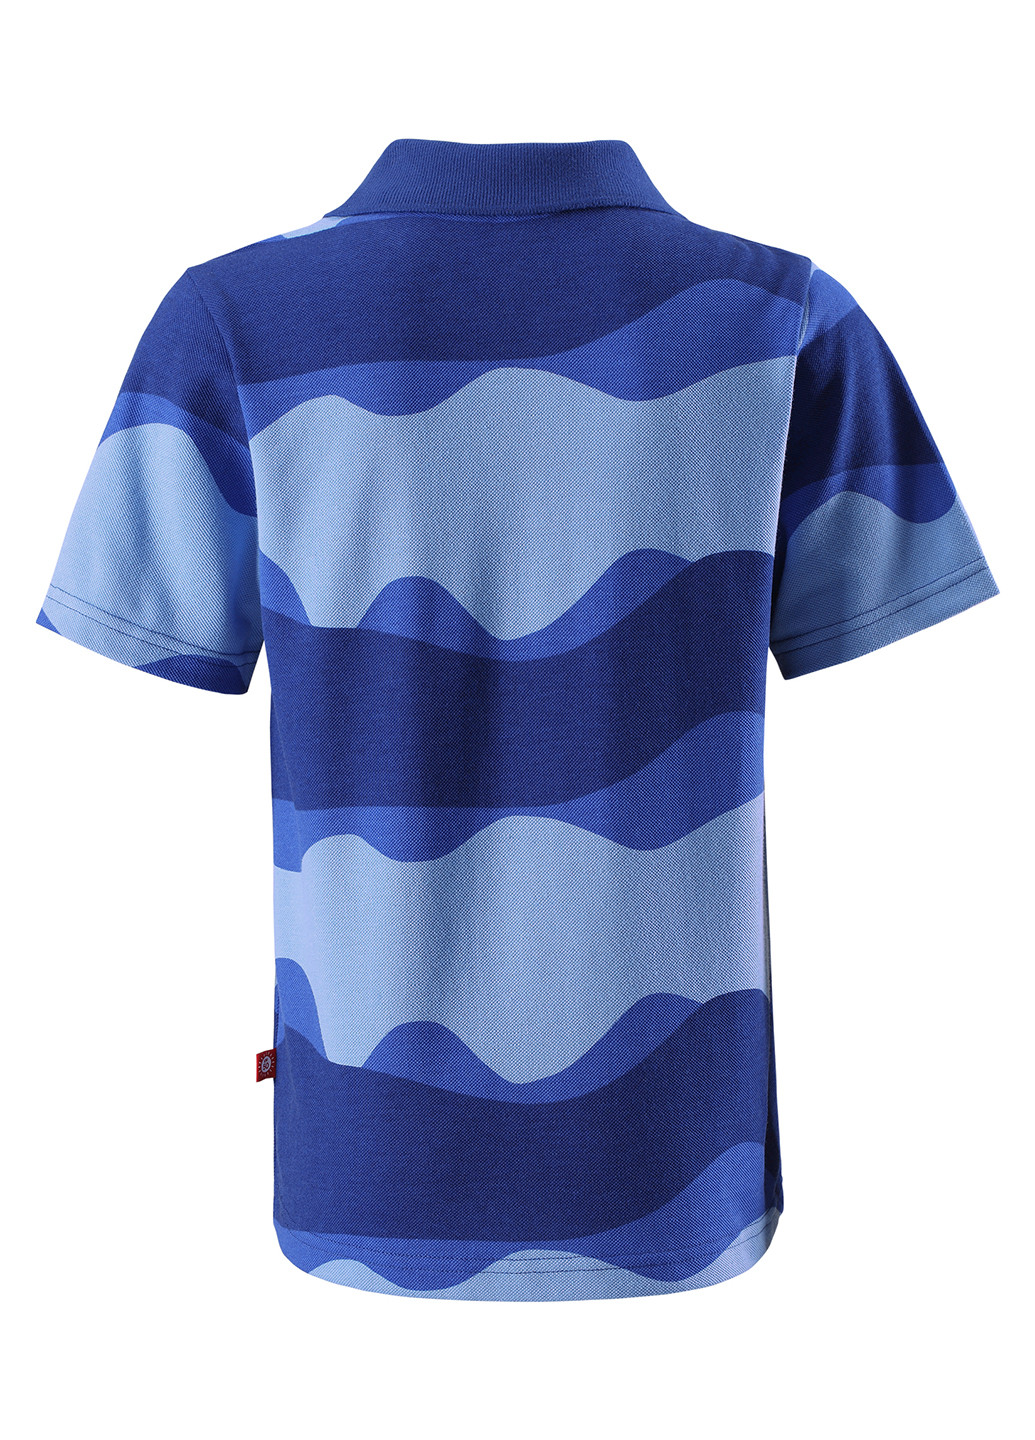 Синяя детская футболка-поло для мальчика Reima с геометрическим узором